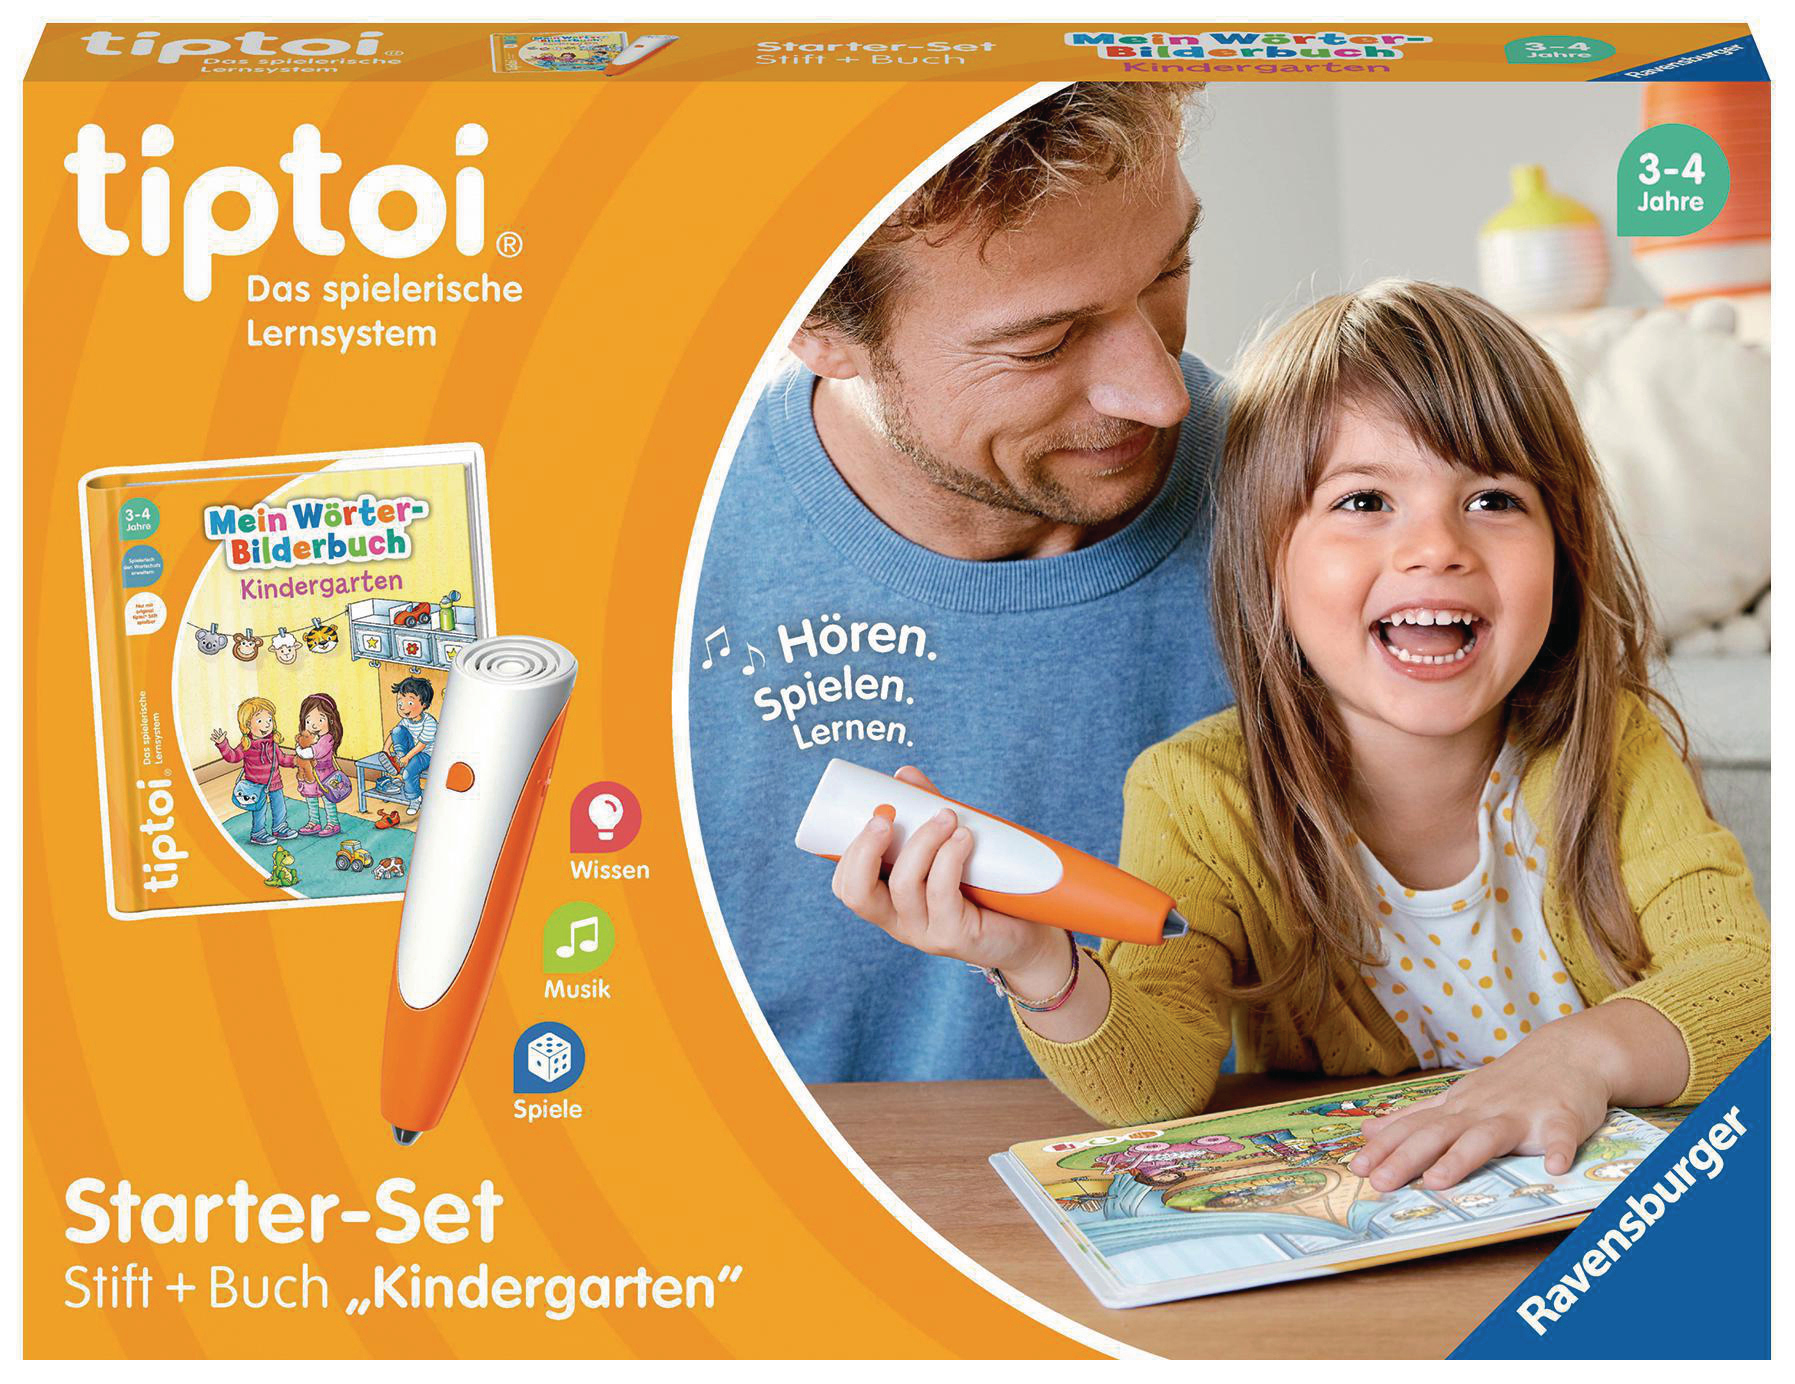 tiptoi Starter-Set: TIPTOI Wörter-Bilderbuch Kindergarten Stift Mehrfarbig und tiptoi®